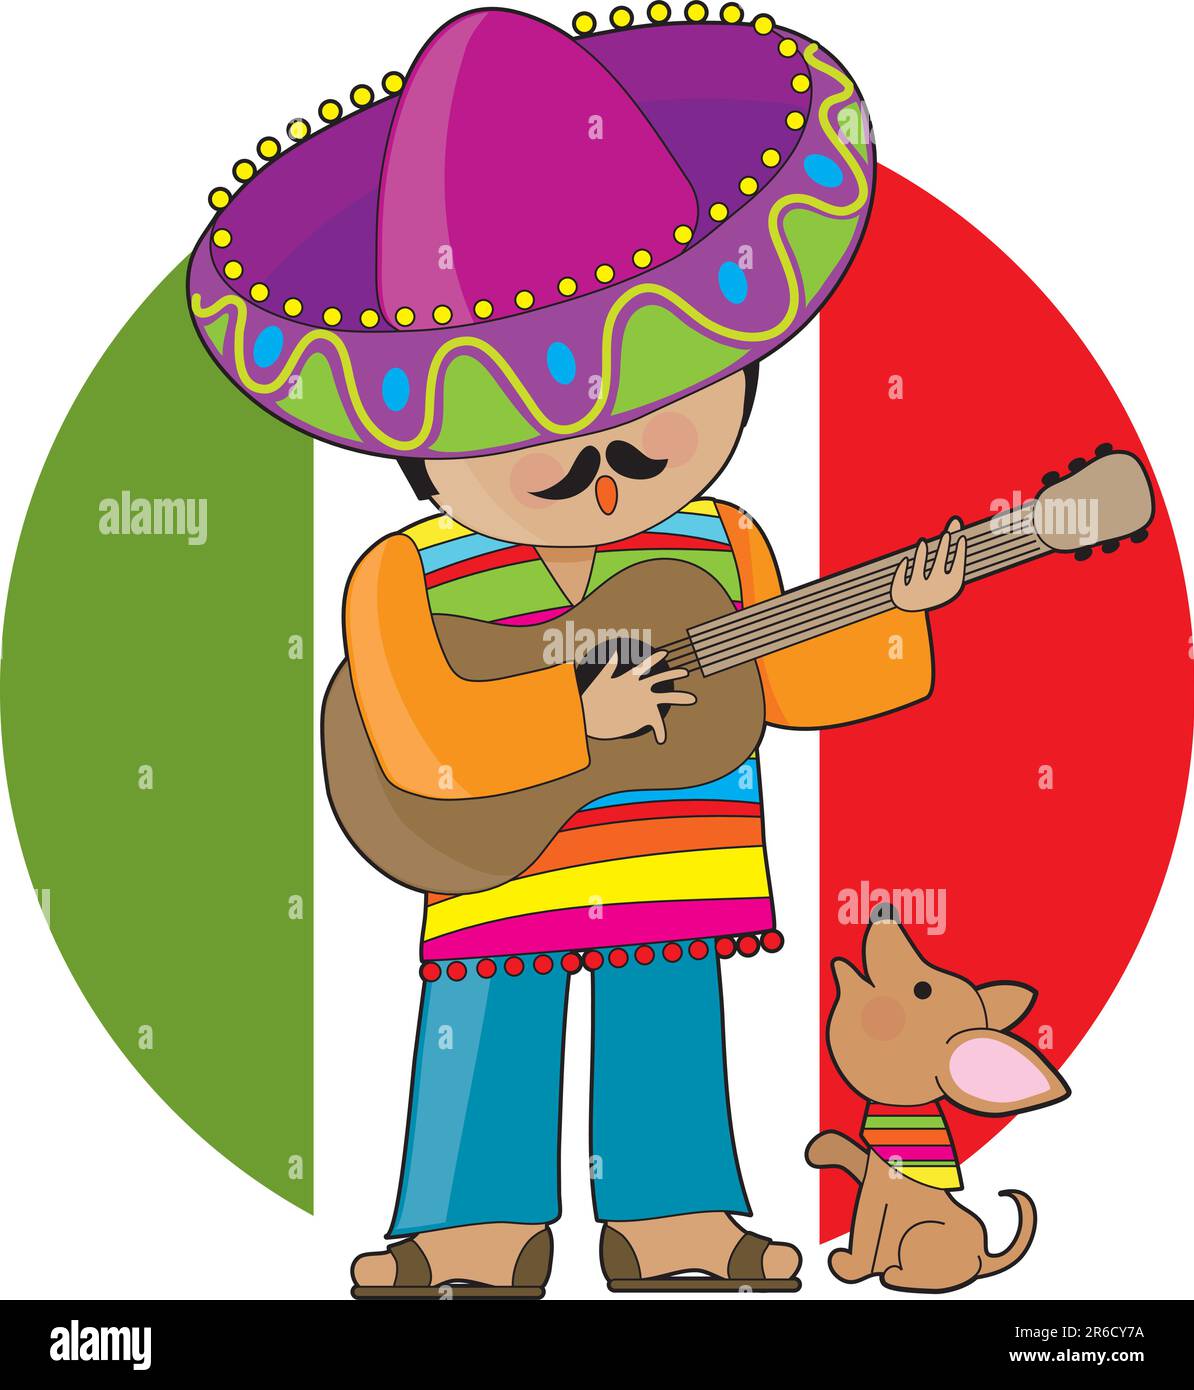 Un homme mexicain jouant de la guitare et serenradant son petit chihuahua Illustration de Vecteur